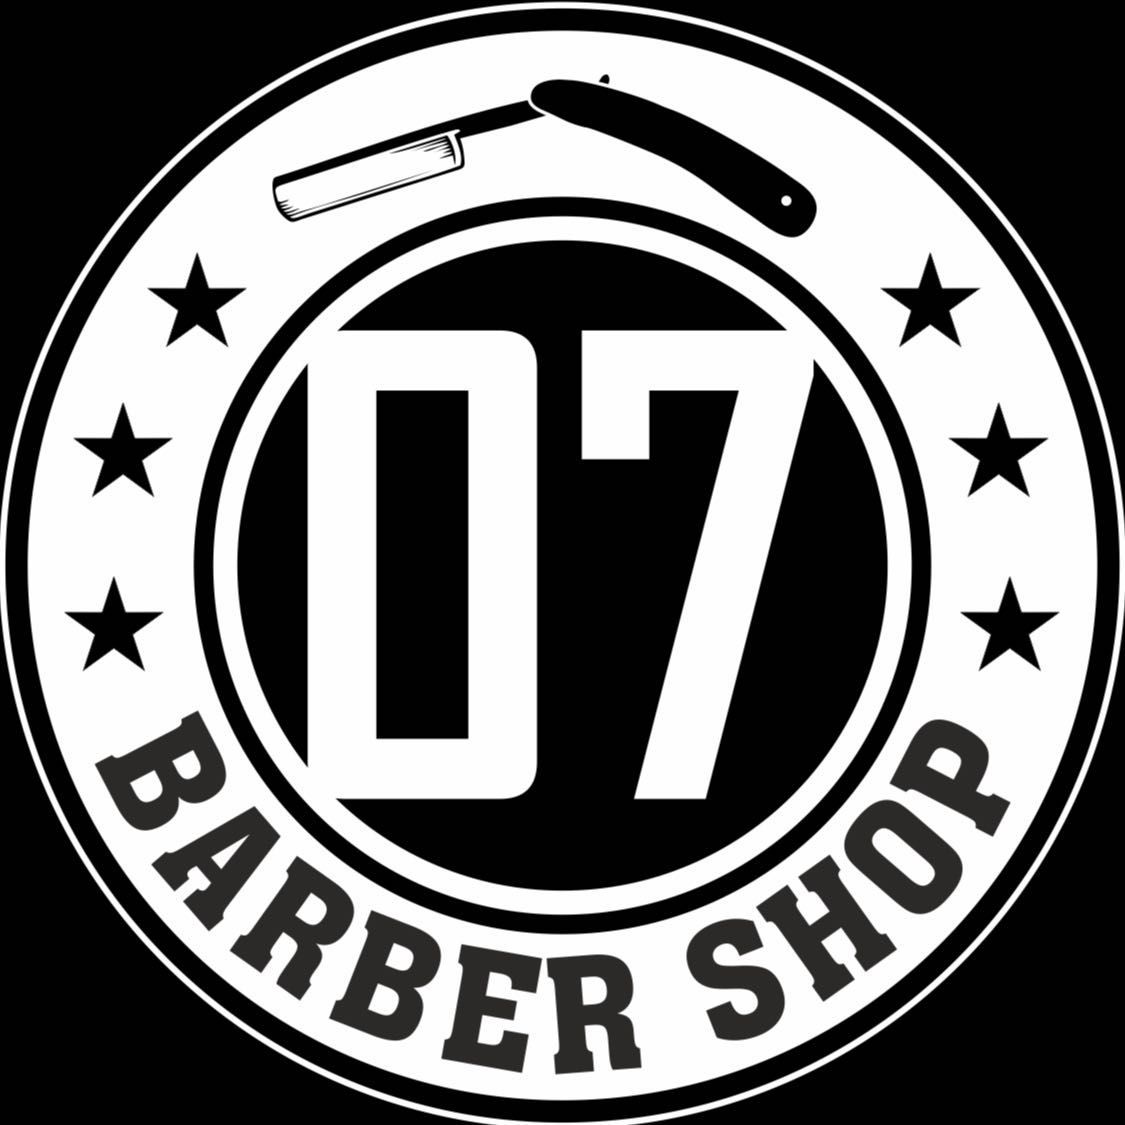 07 BarberShop, Górnych Wałów 18, 44-100, Gliwice